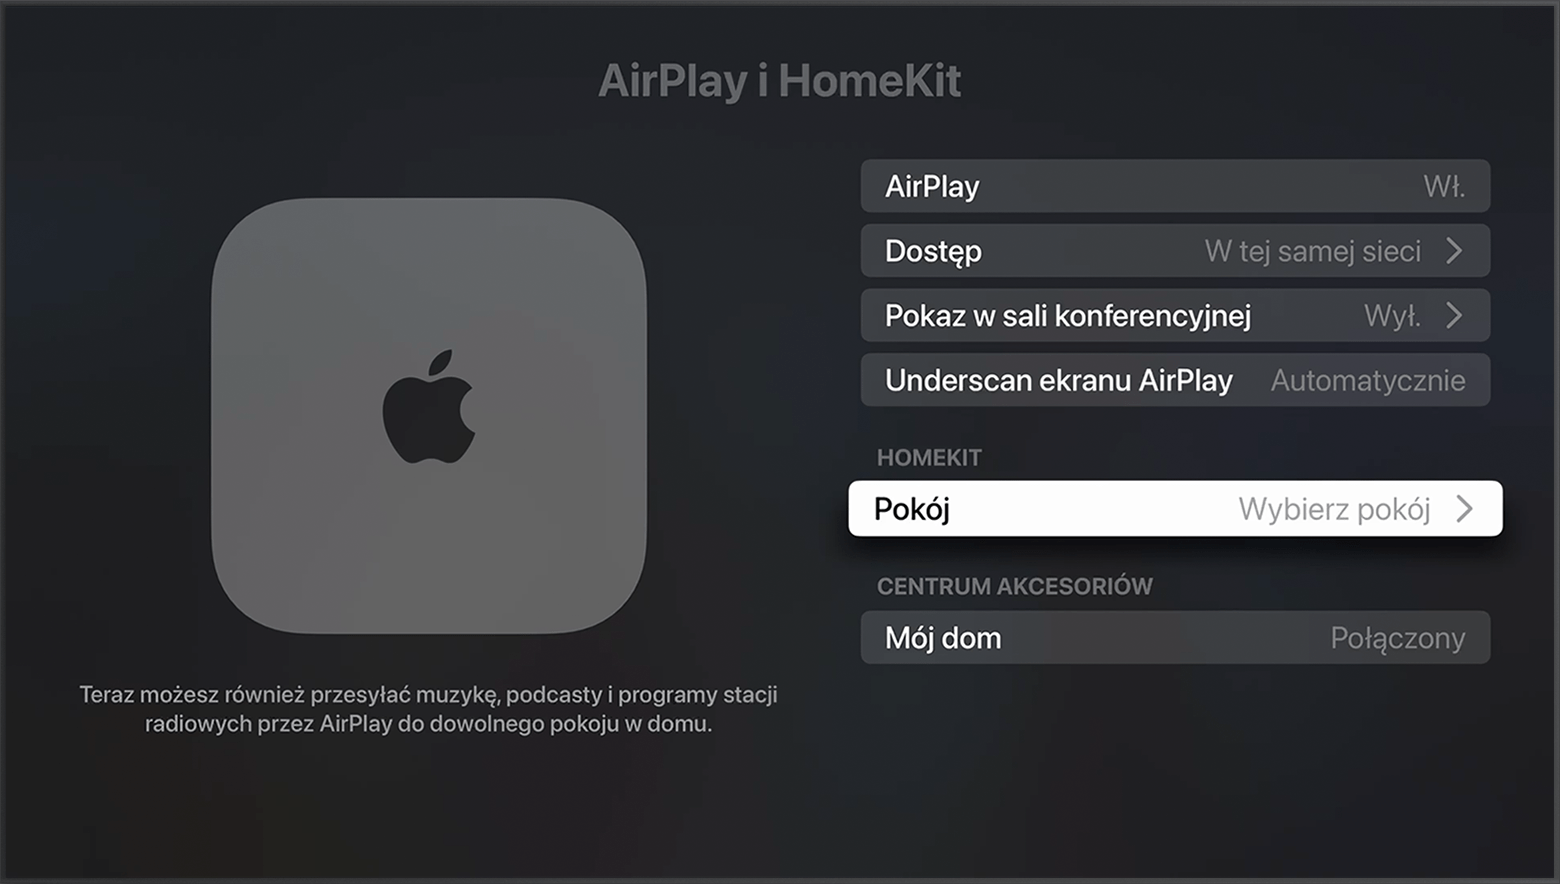 Opcja Pokój jest wyświetlana w obszarze HomeKit na ekranie AirPlay i HomeKit w ustawieniach Apple TV